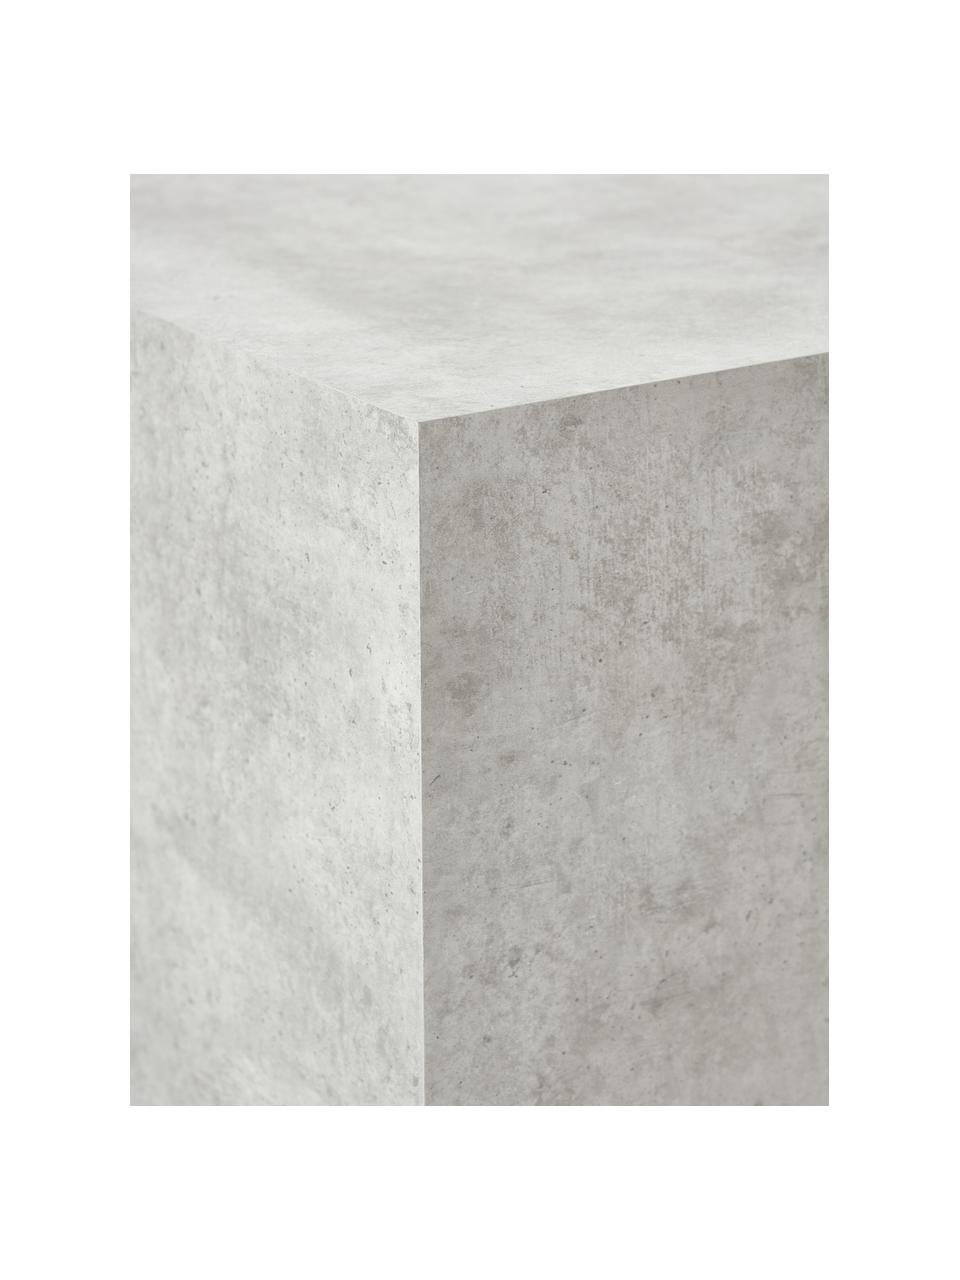 Odkládací stolek v betonovém vzhledu Lesley, Dřevovláknitá deska střední hustoty (MDF) potažená melaminovou fólií, Šedý betonový vzhled, matný, Š 45 cm, V 50 cm